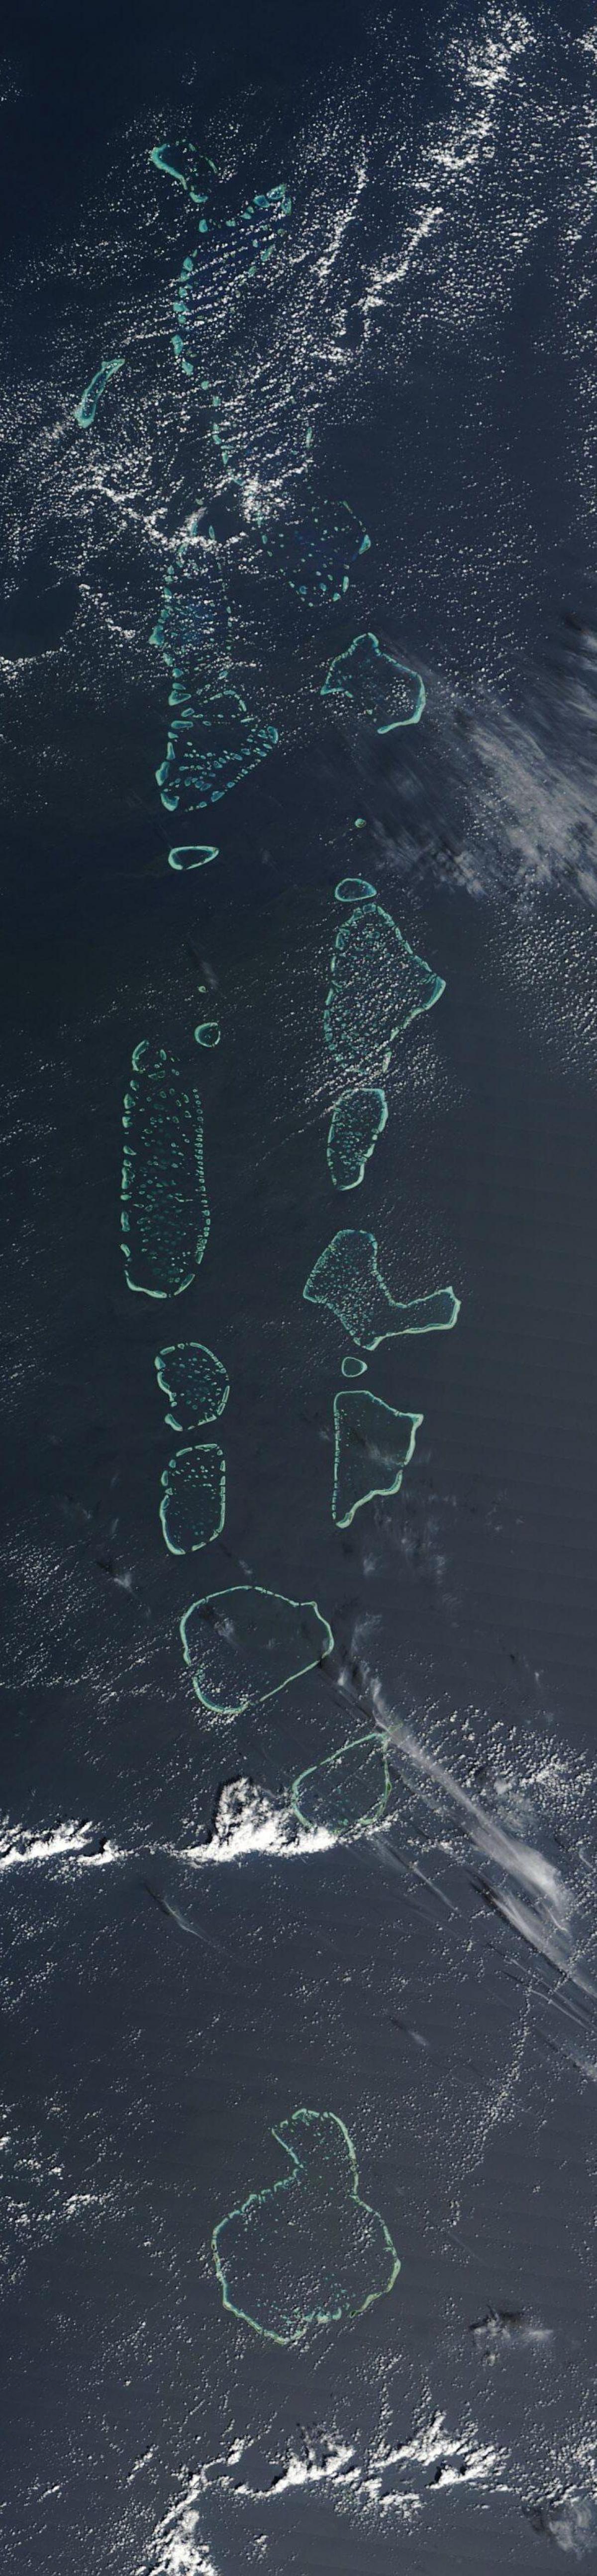 خريطة جزر المالديف قنوات